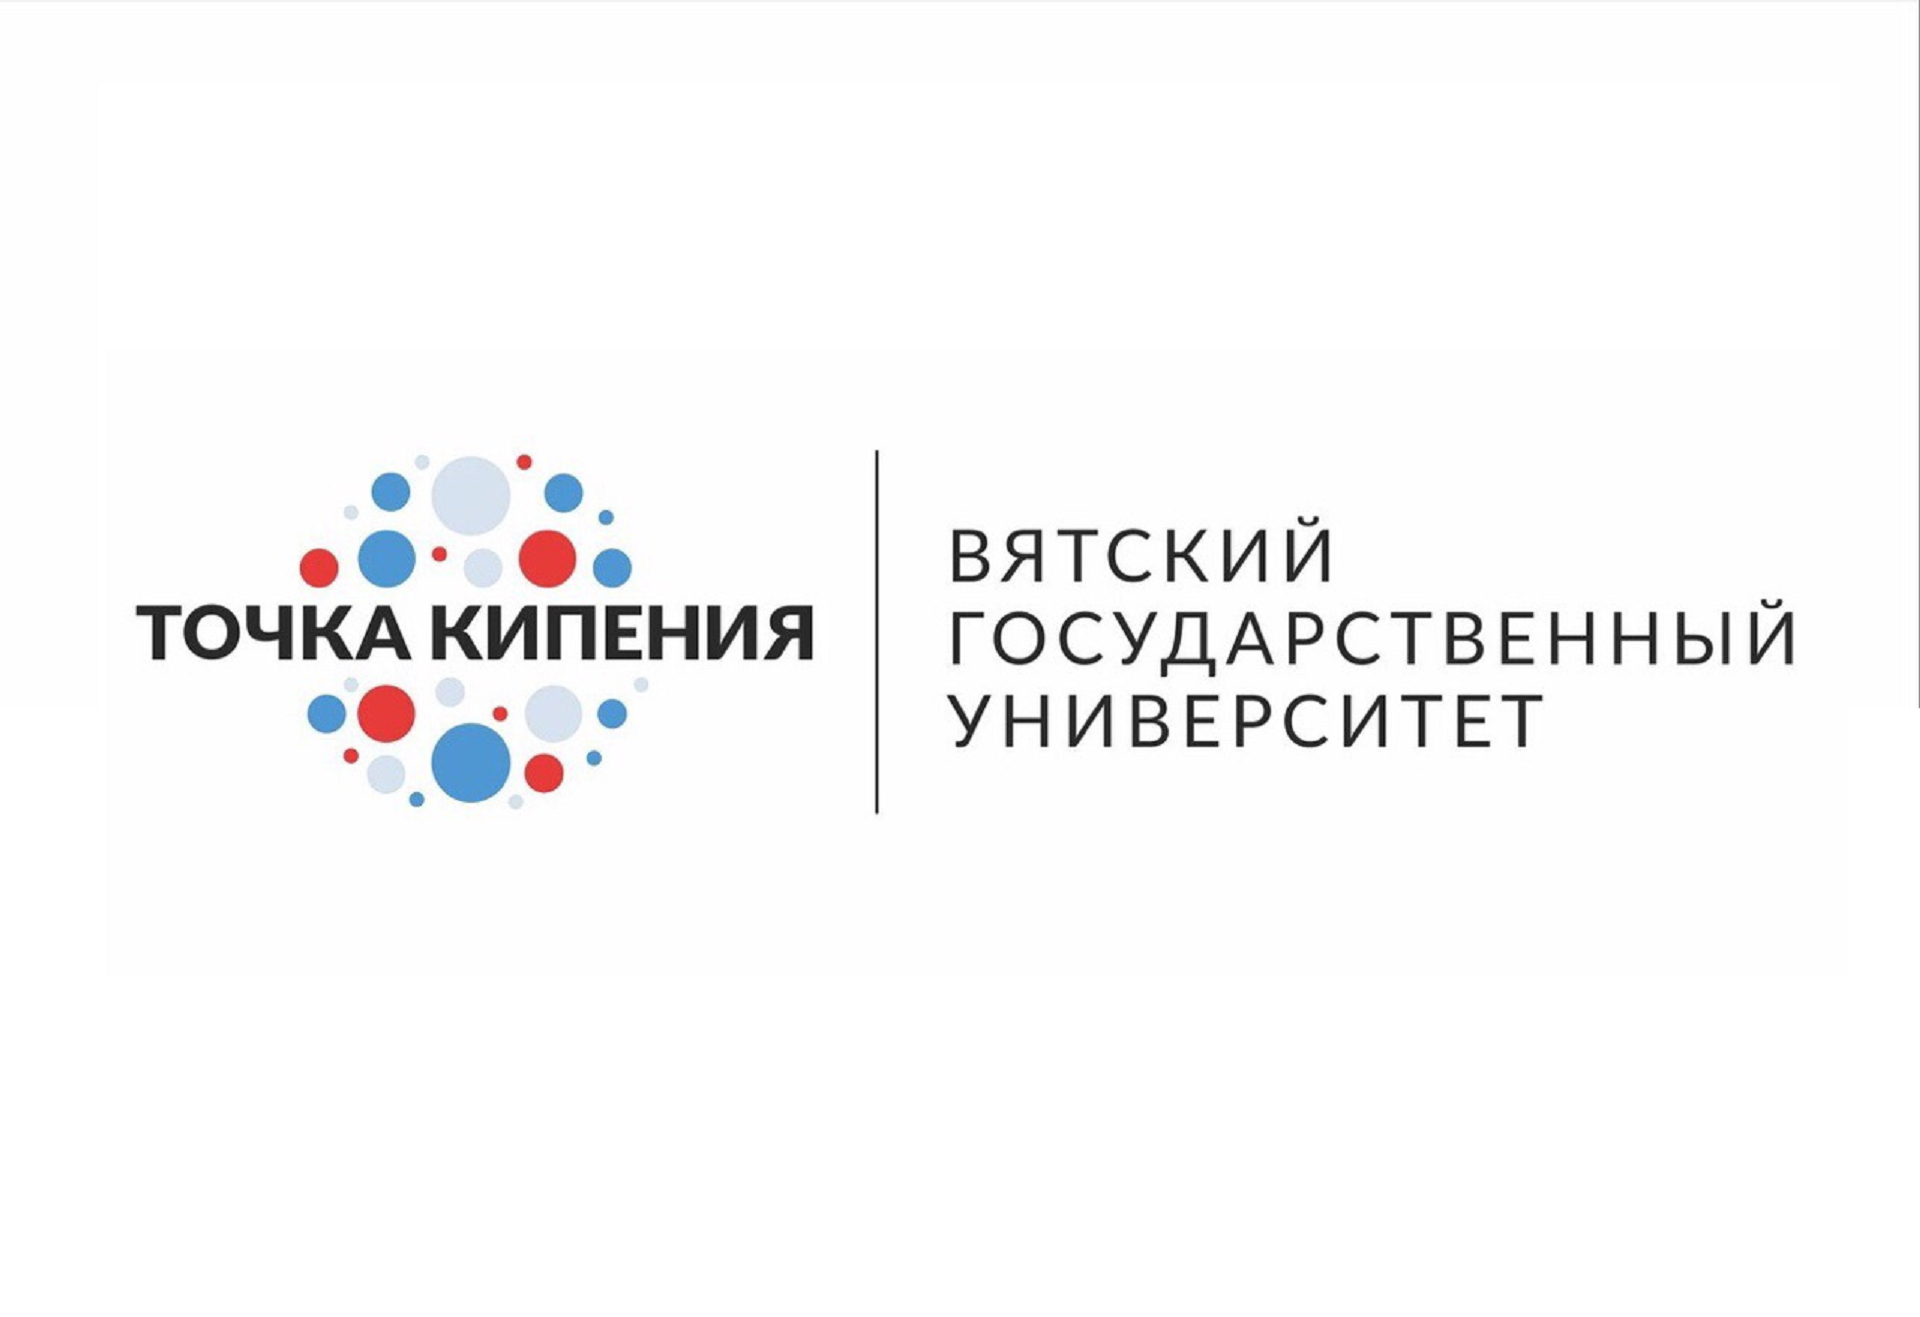 Регистрируйтесь на площадке Leader-ID.ru и участвуйте в форуме «Психология для жизни» в Точке кипения ВятГУ